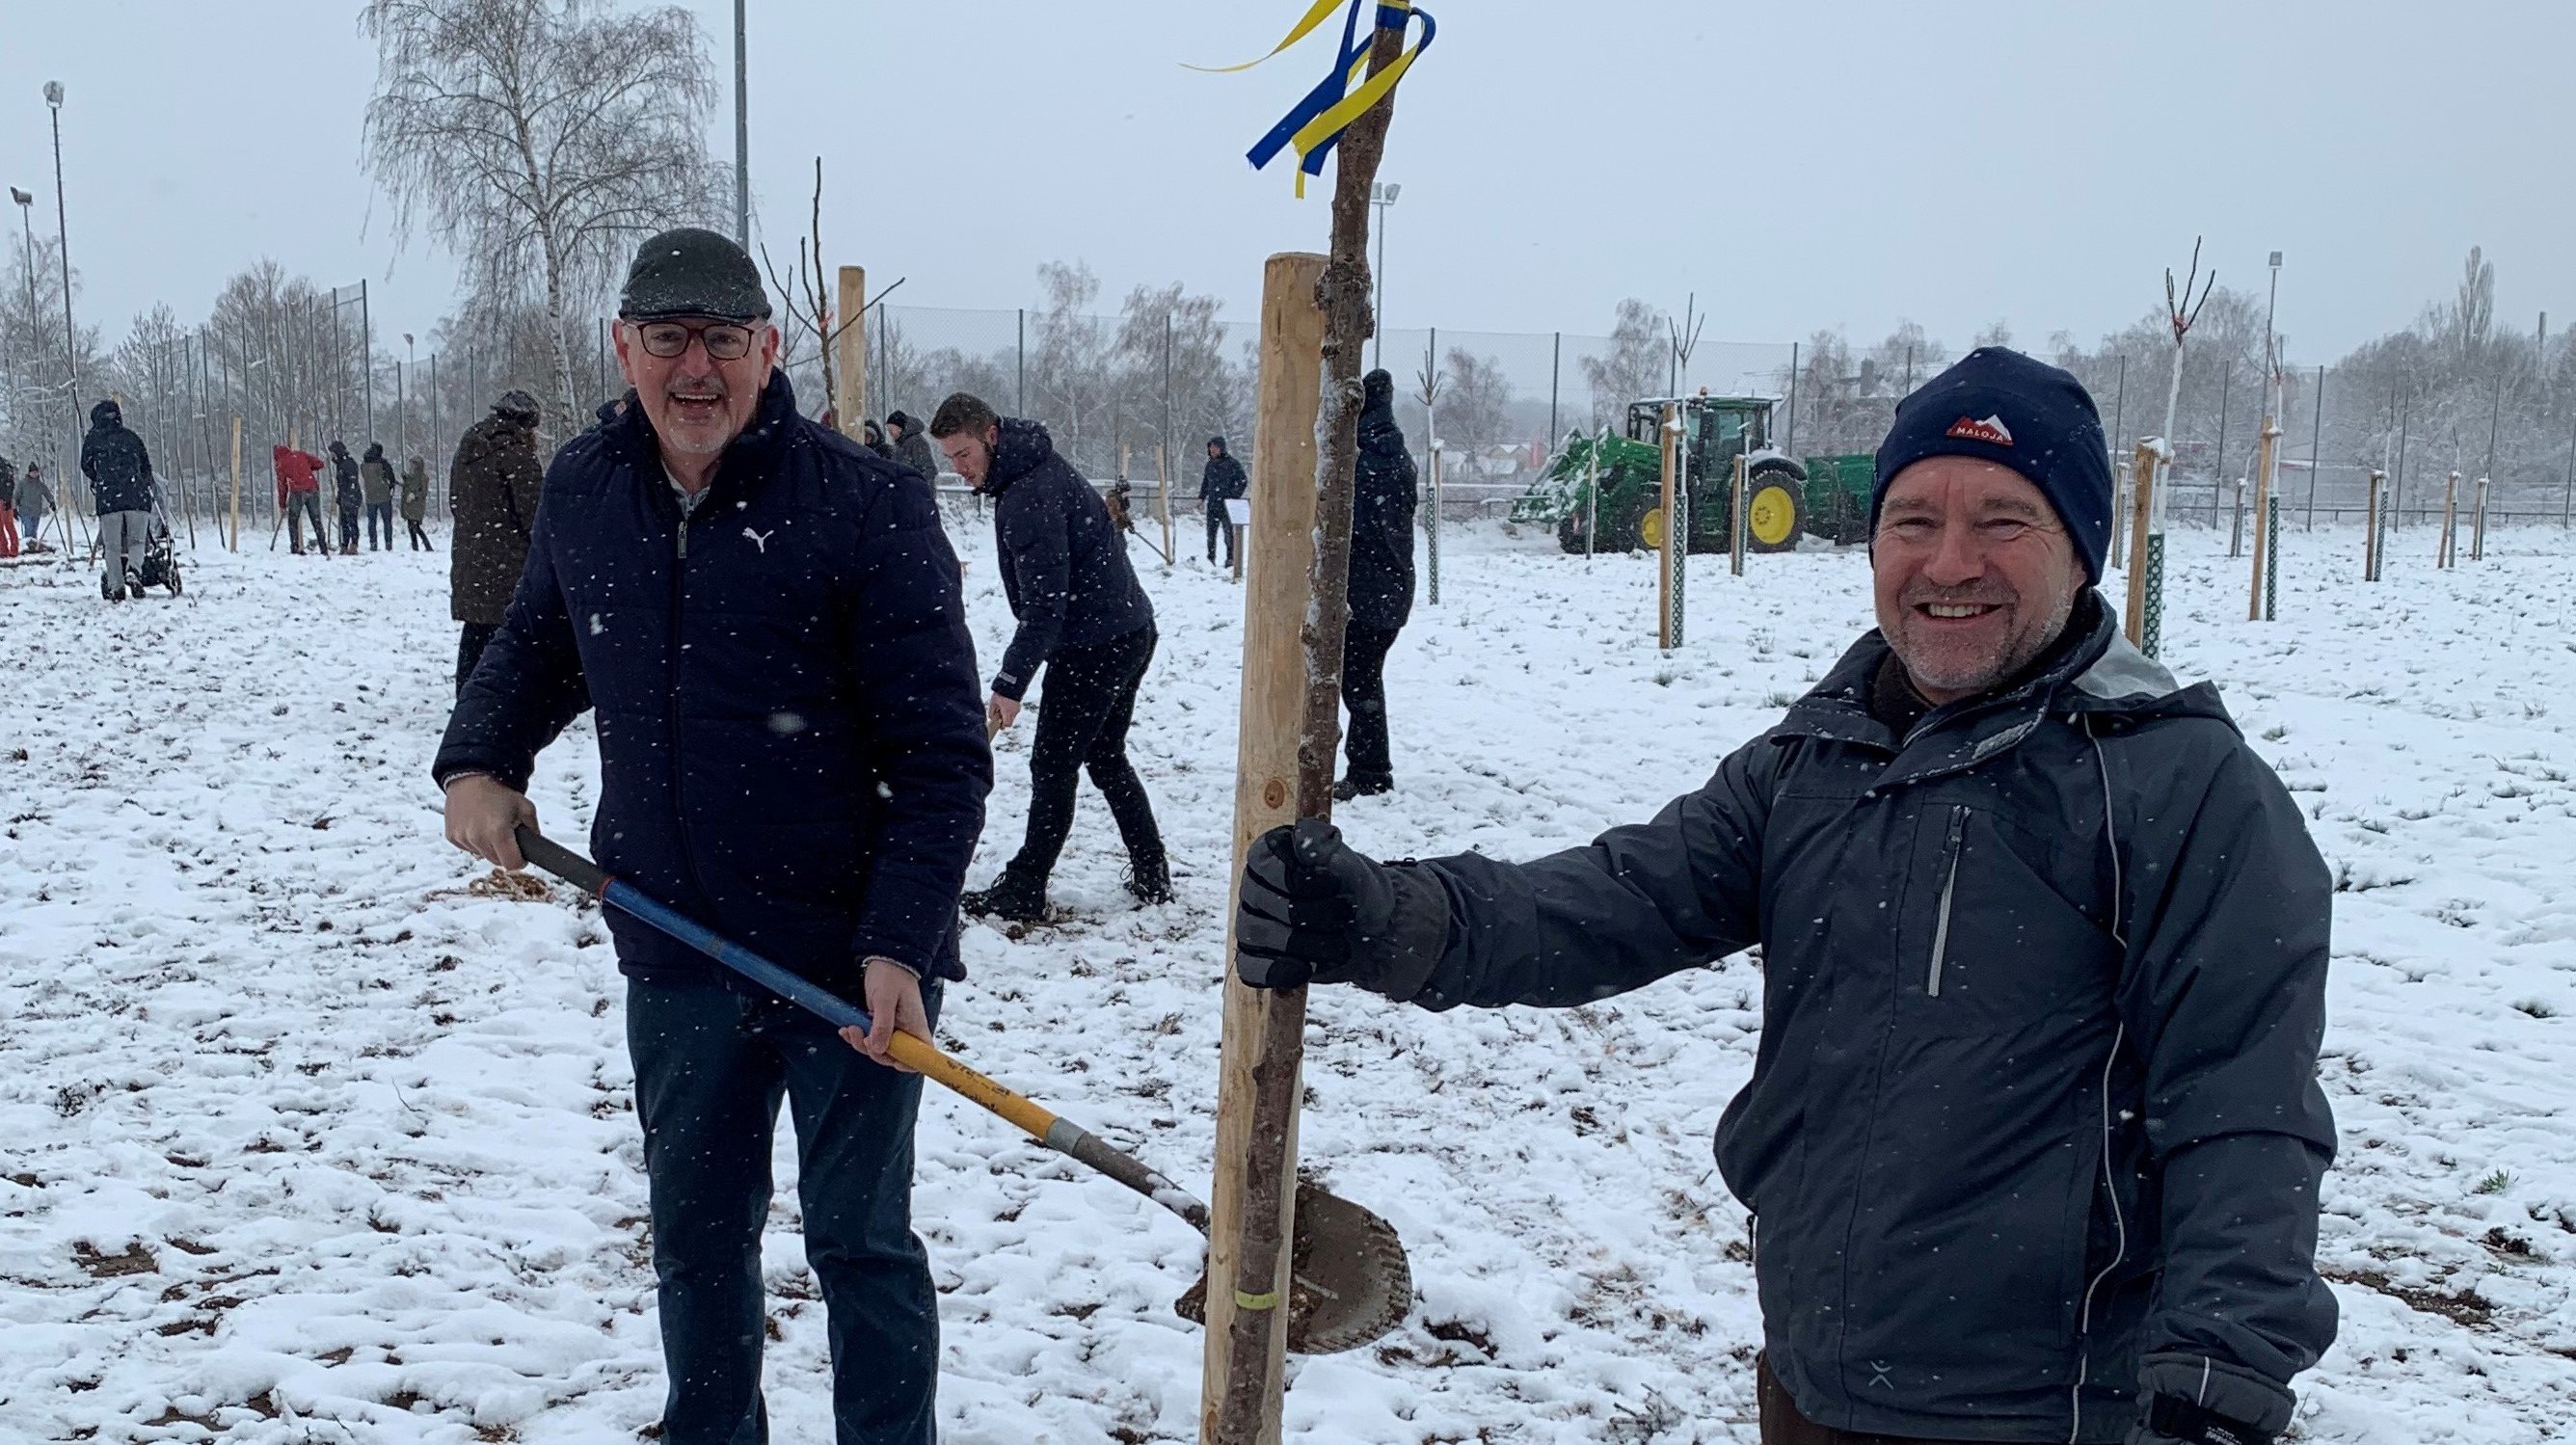 Das Bild zeigt Bürgermeister Thomas Zwingel und den Leiter der Service-Betriebe Ralf Klein bei einer Baumpflanzung im Schnee.